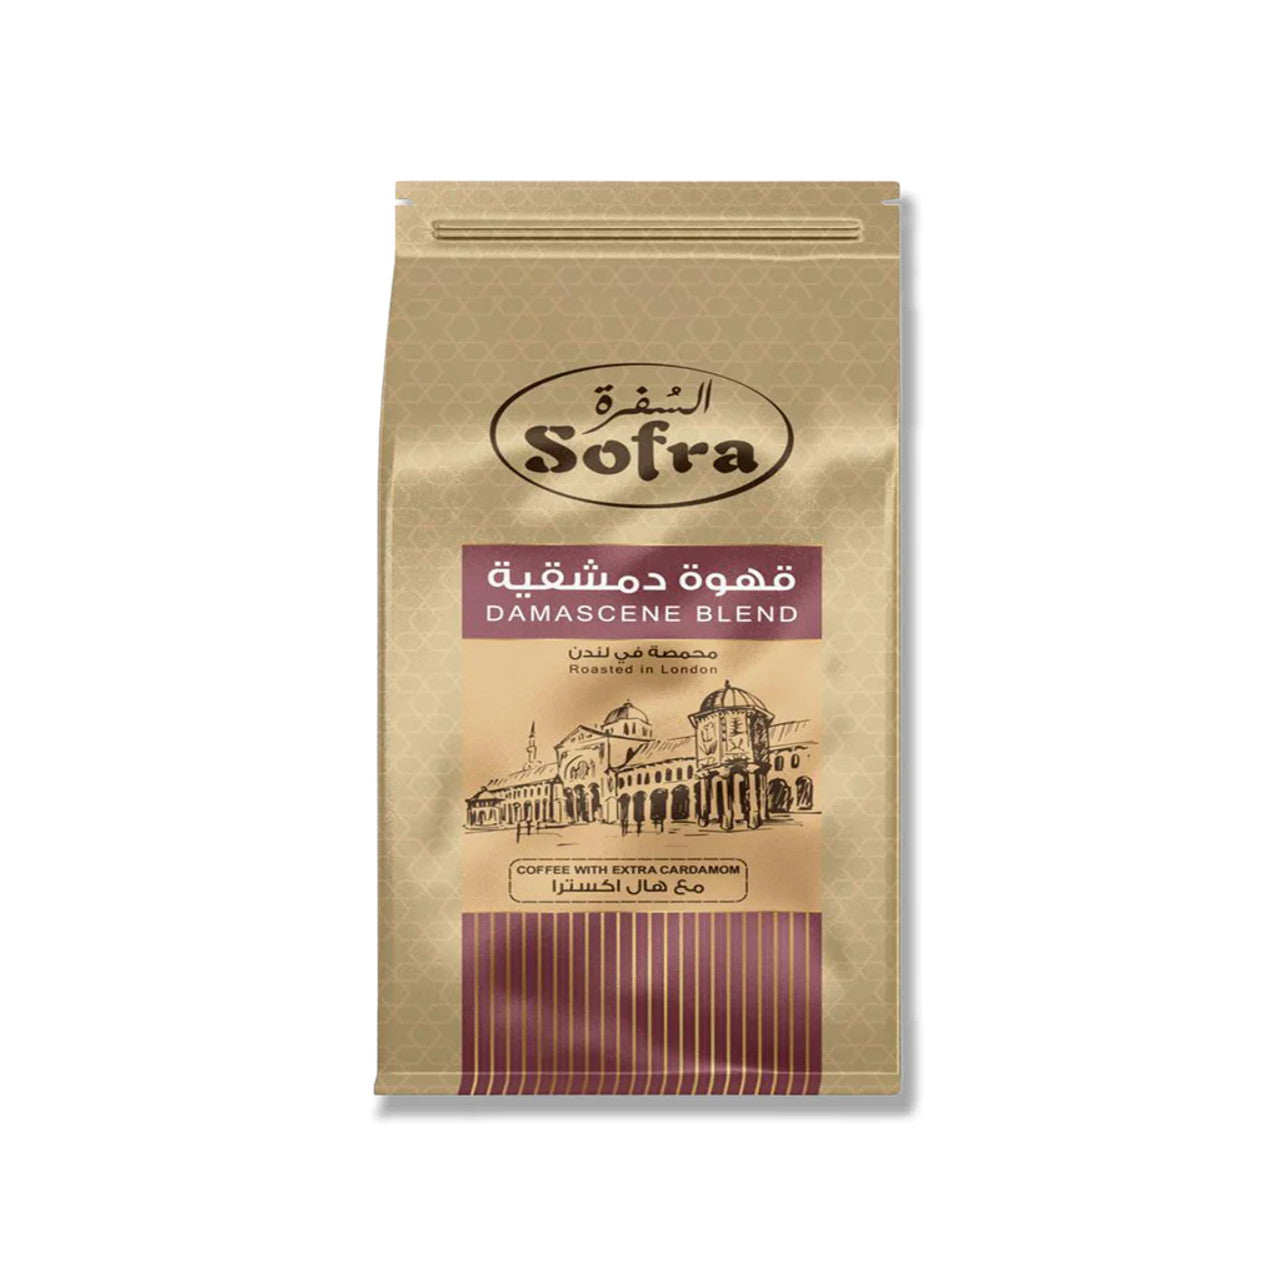 Sofra Damascene Blend Coffee 200g